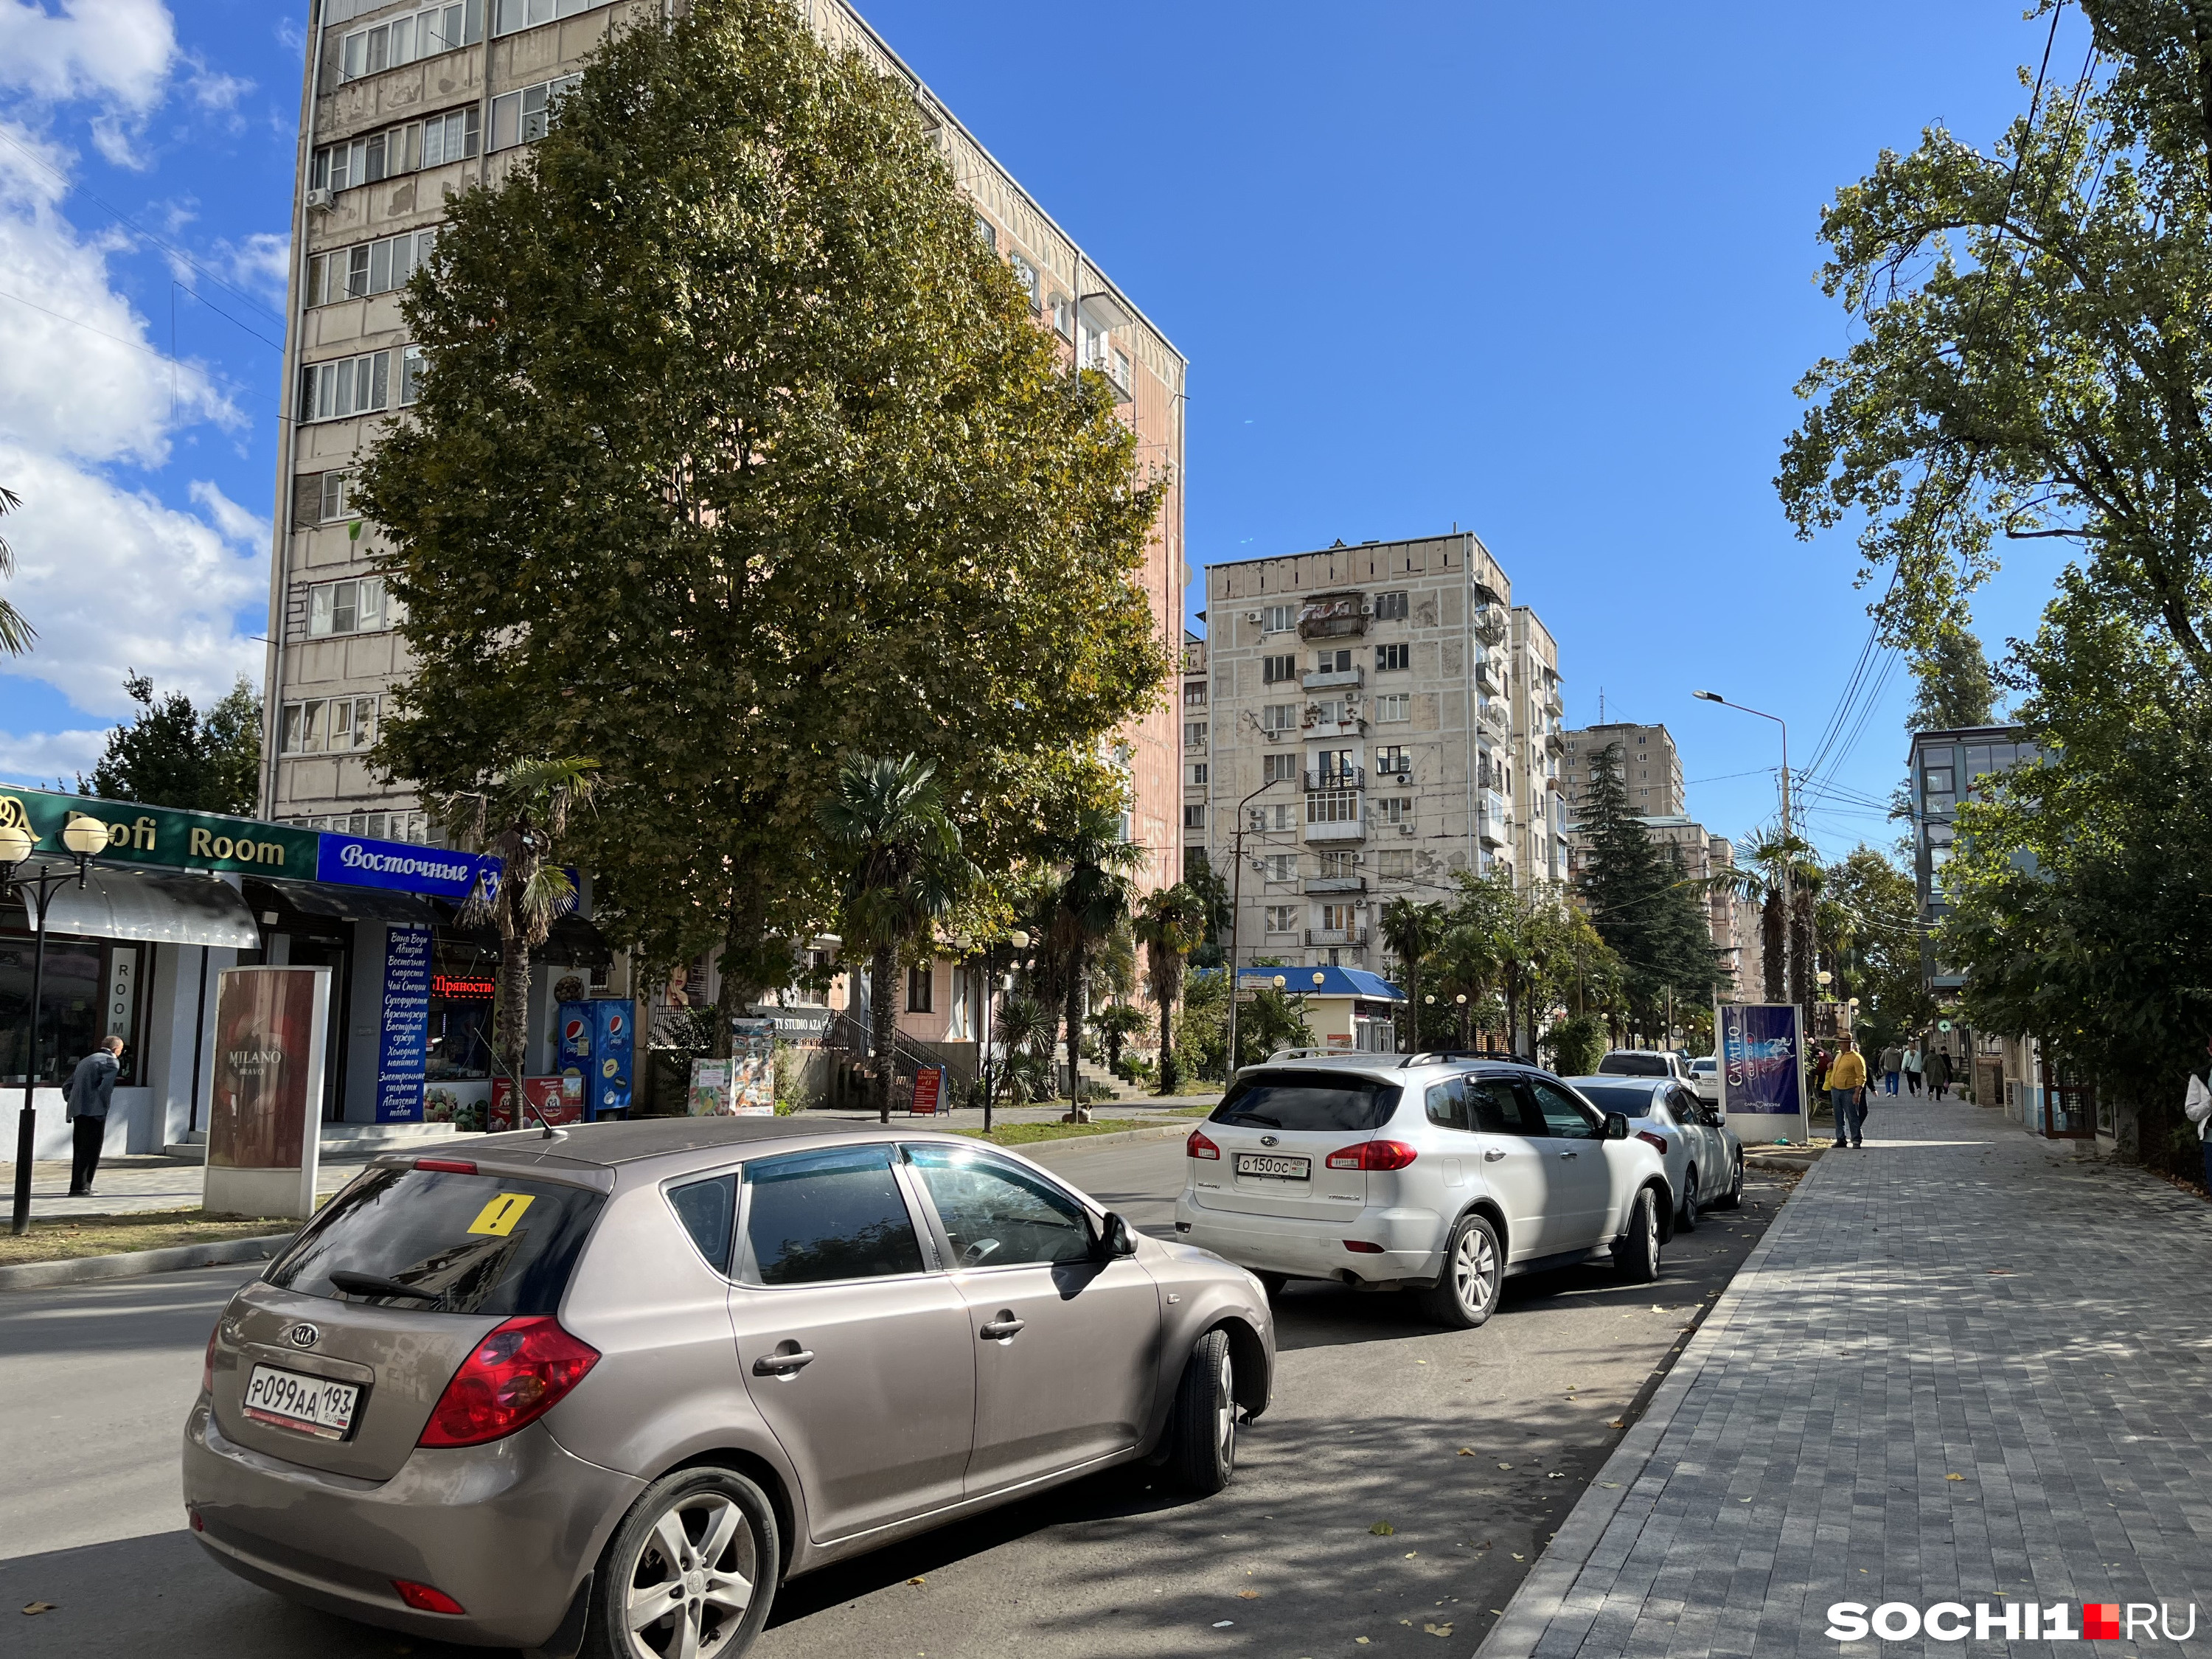 Коммерческую недвижимость купить можно, но правильно оформленной немного в Абхазии